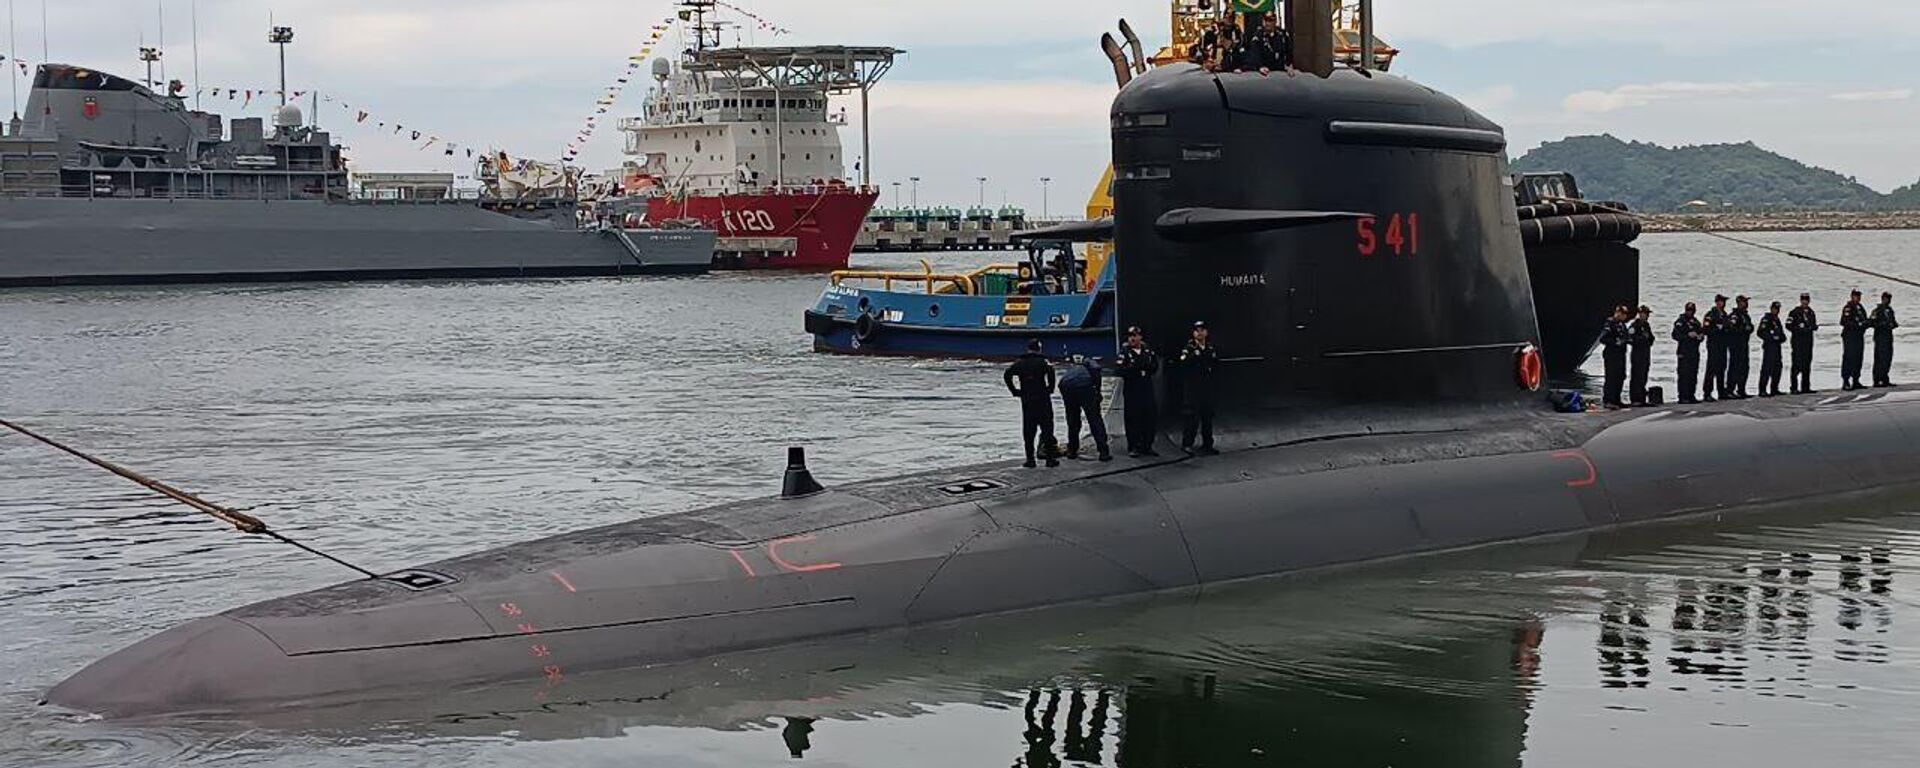 Submarino Humaitá (S-41), da Marinha brasileira, durante cerimônia de lançamento realizada em Itaguaí (RJ), em 12 de janeiro de 2024 - Sputnik Brasil, 1920, 12.01.2024